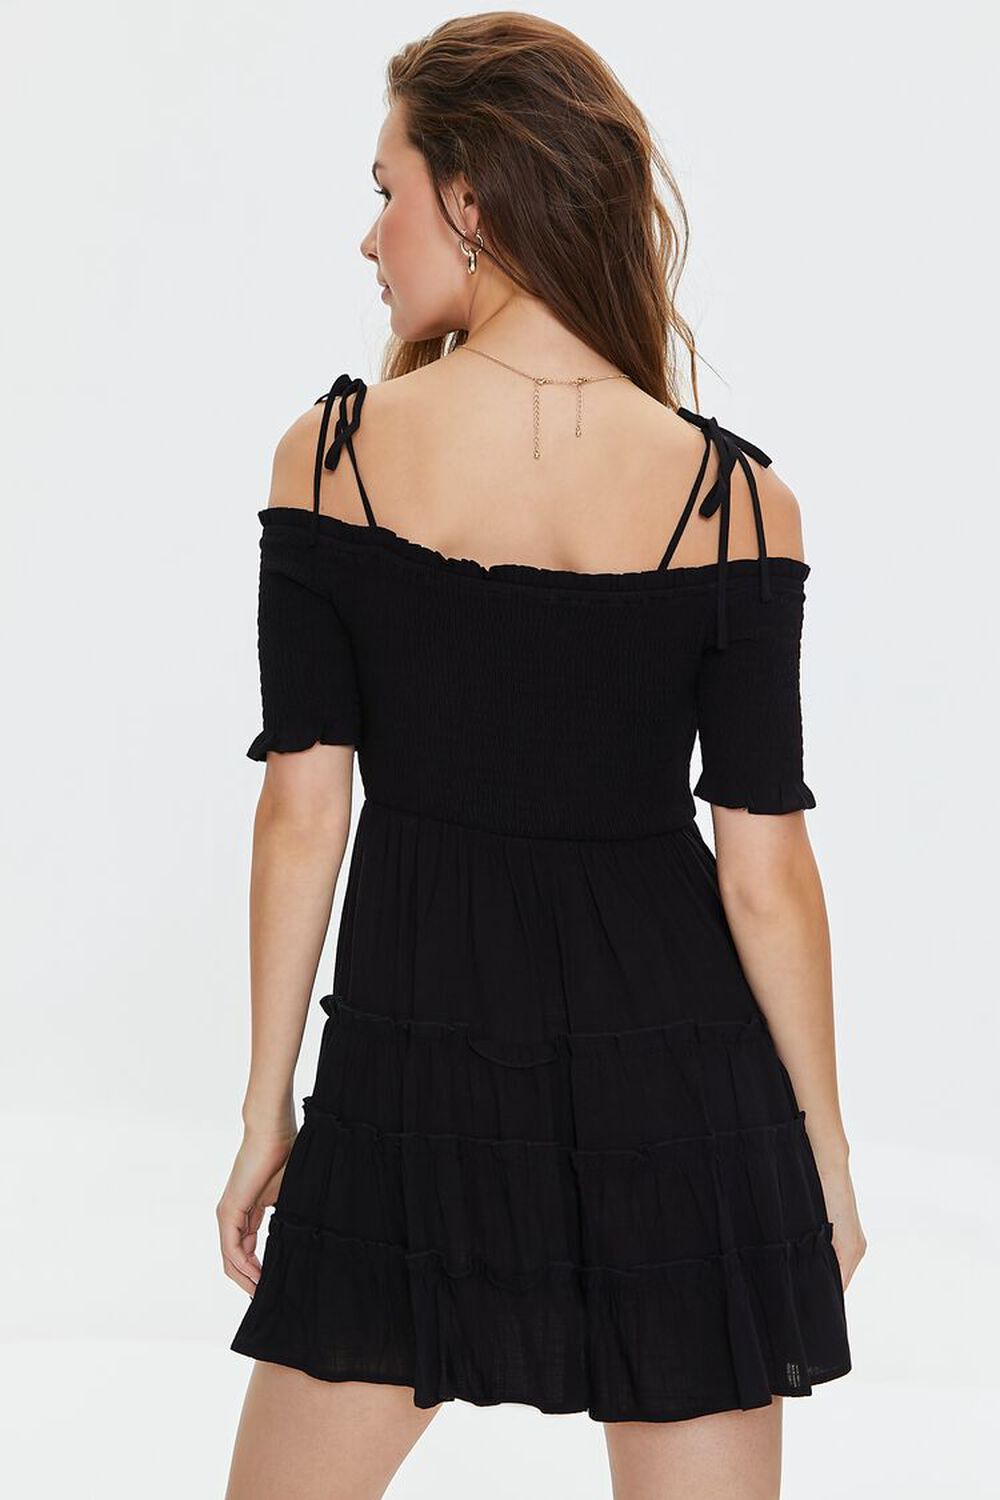 BLACK Smocked Open-Shoulder Mini Dress, image 3